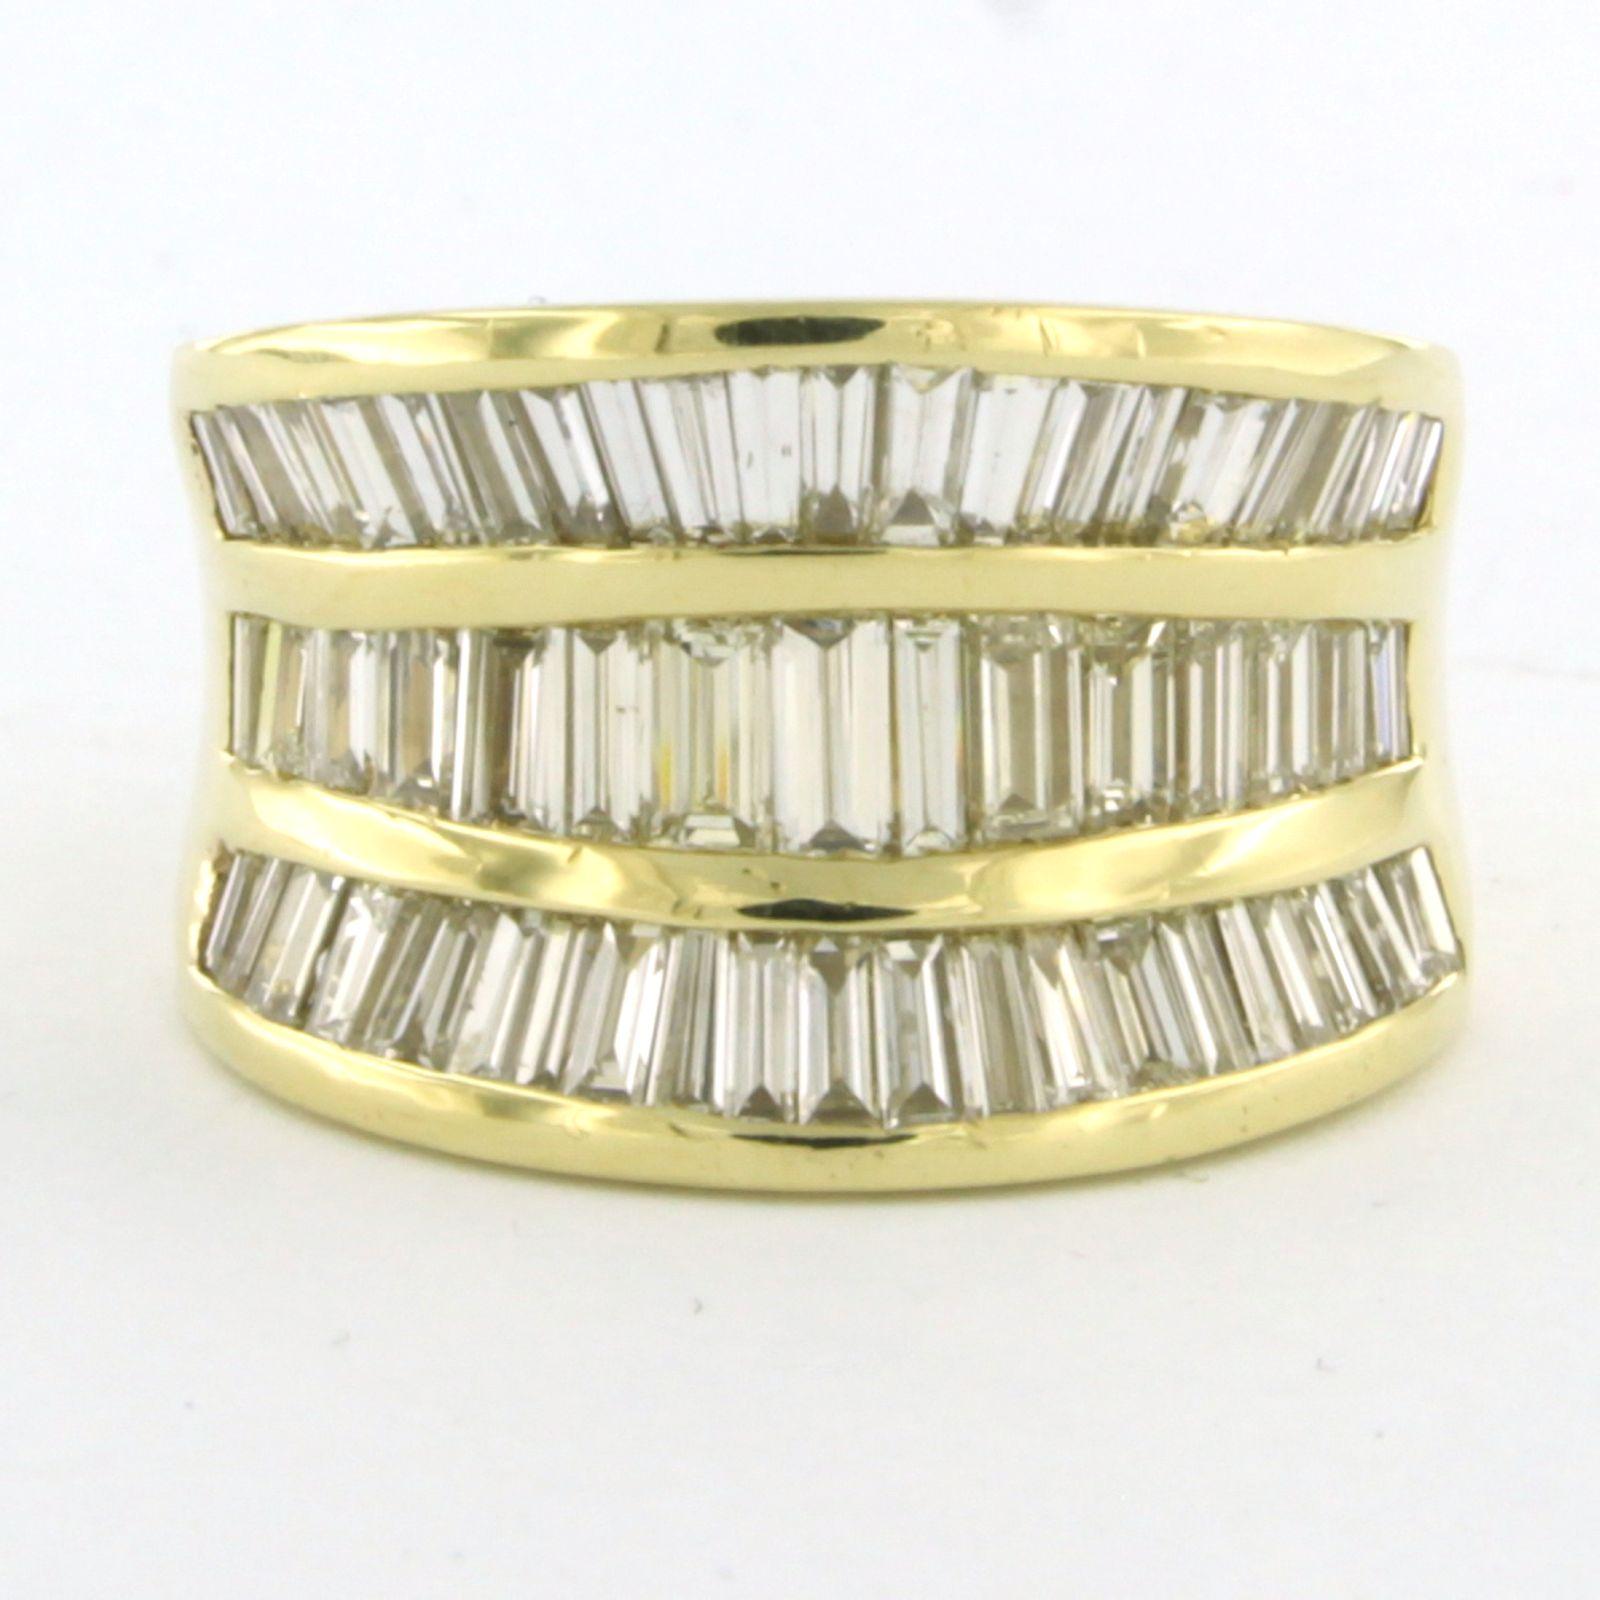 Bague en or jaune 18k sertie d'un diamant taille taper-baguette jusqu'à . 4.00ct - F/G - VS/SI - taille U.S. 8.25 - EU. 18.25(57)

Description détaillée

le haut de l'anneau a une largeur de 1,5 cm et une hauteur de 4,5 mm

Taille de l'anneau US